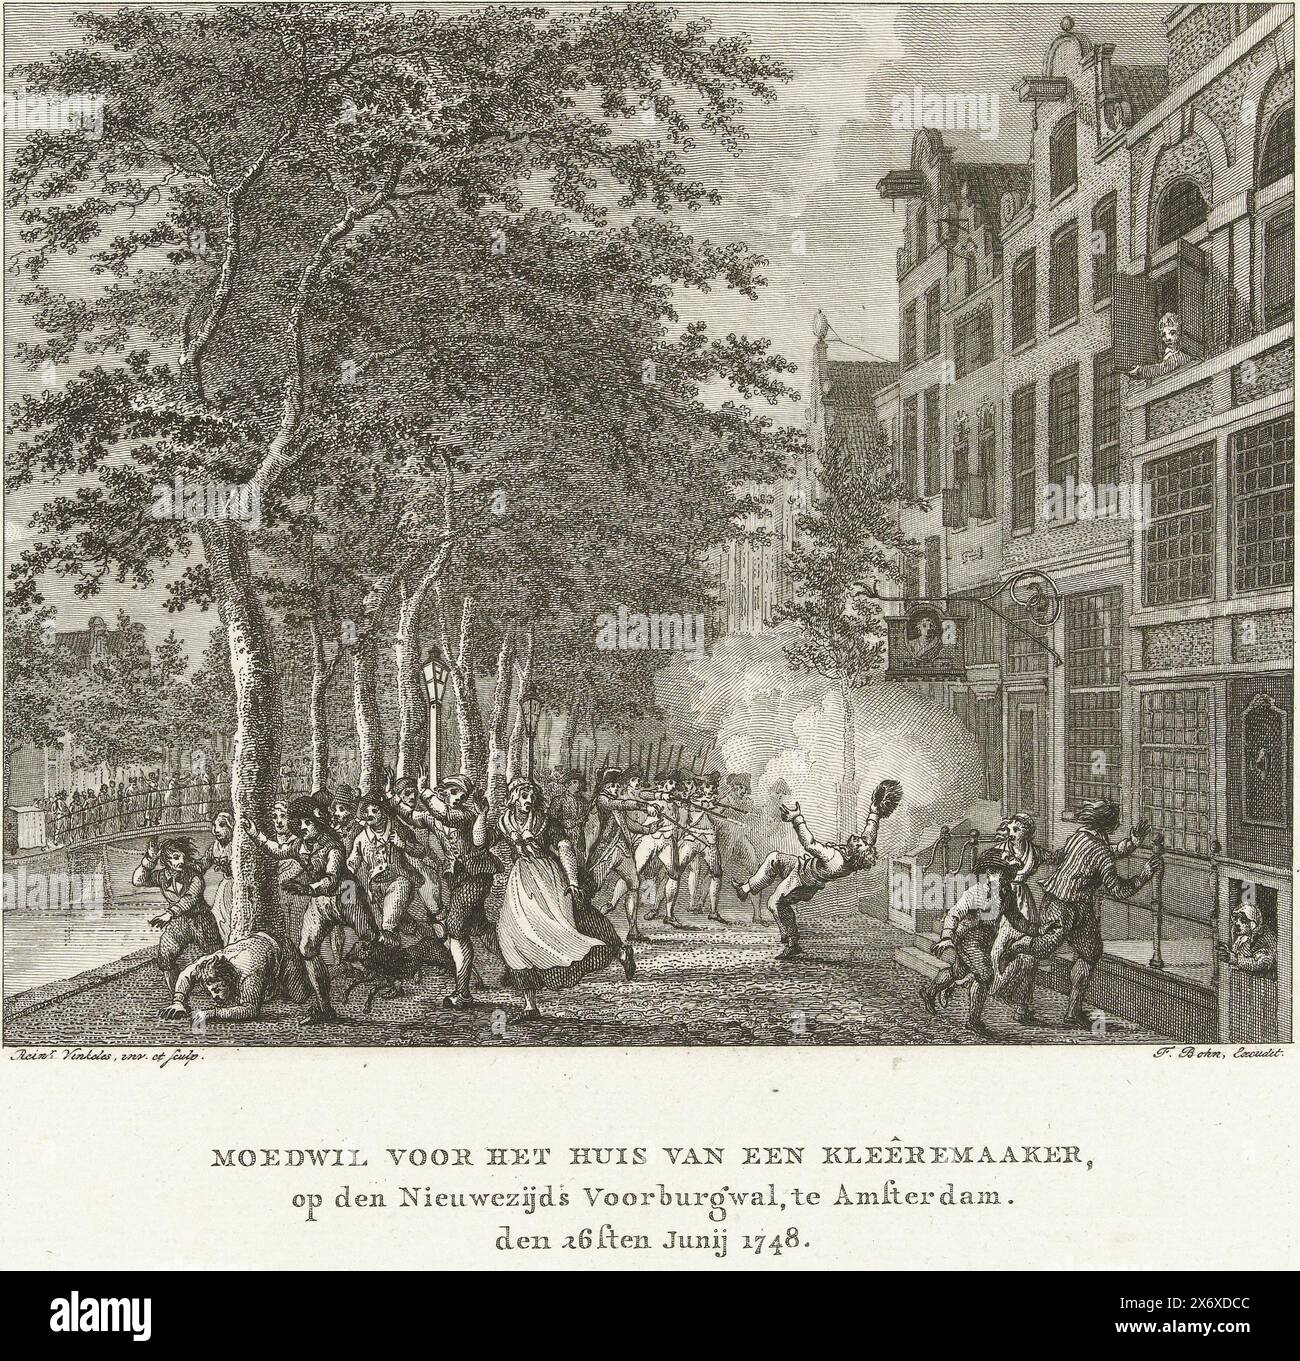 Émeute devant une maison de tailleur à Amsterdam, 1747, Moedwil devant une maison de tailleur, sur le Nieuwezijds Voorburgwal, à Amsterdam. Le 26 juin 1748 (titre sur objet), troubles lors de l'émeute de Pachter devant la maison d'un tailleur sur le Nieuwezijds Voorburgwal à Amsterdam, où un Suédois qui avait pillé dans la rue est abattu par la garde civile, 26 juin 1748., imprimerie, imprimerie: Reinier Vinkeles (I), (mentionné sur l'objet), d'après son propre dessin par : Reinier Vinkeles (I), (mentionné sur l'objet), éditeur : François Bohn, (mentionné sur l'objet), pays-Bas du Nord, (éventuellement), 1800 Banque D'Images